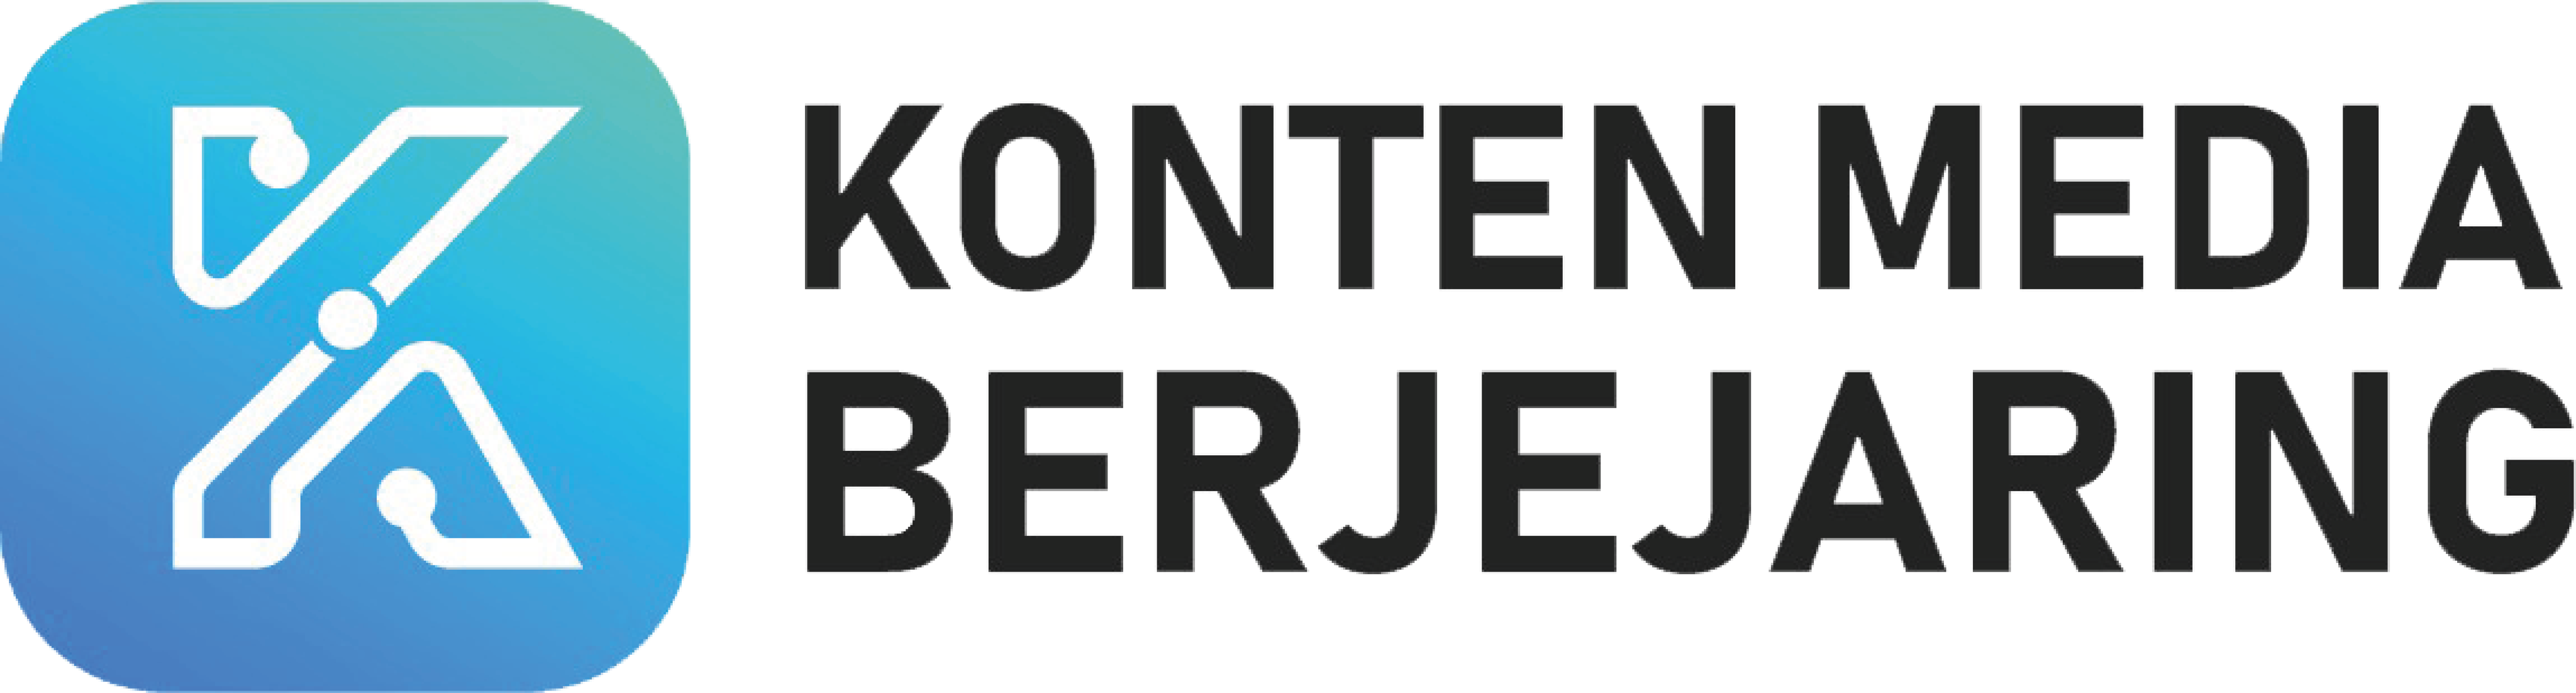 PT Konten Media Berjejaring logo